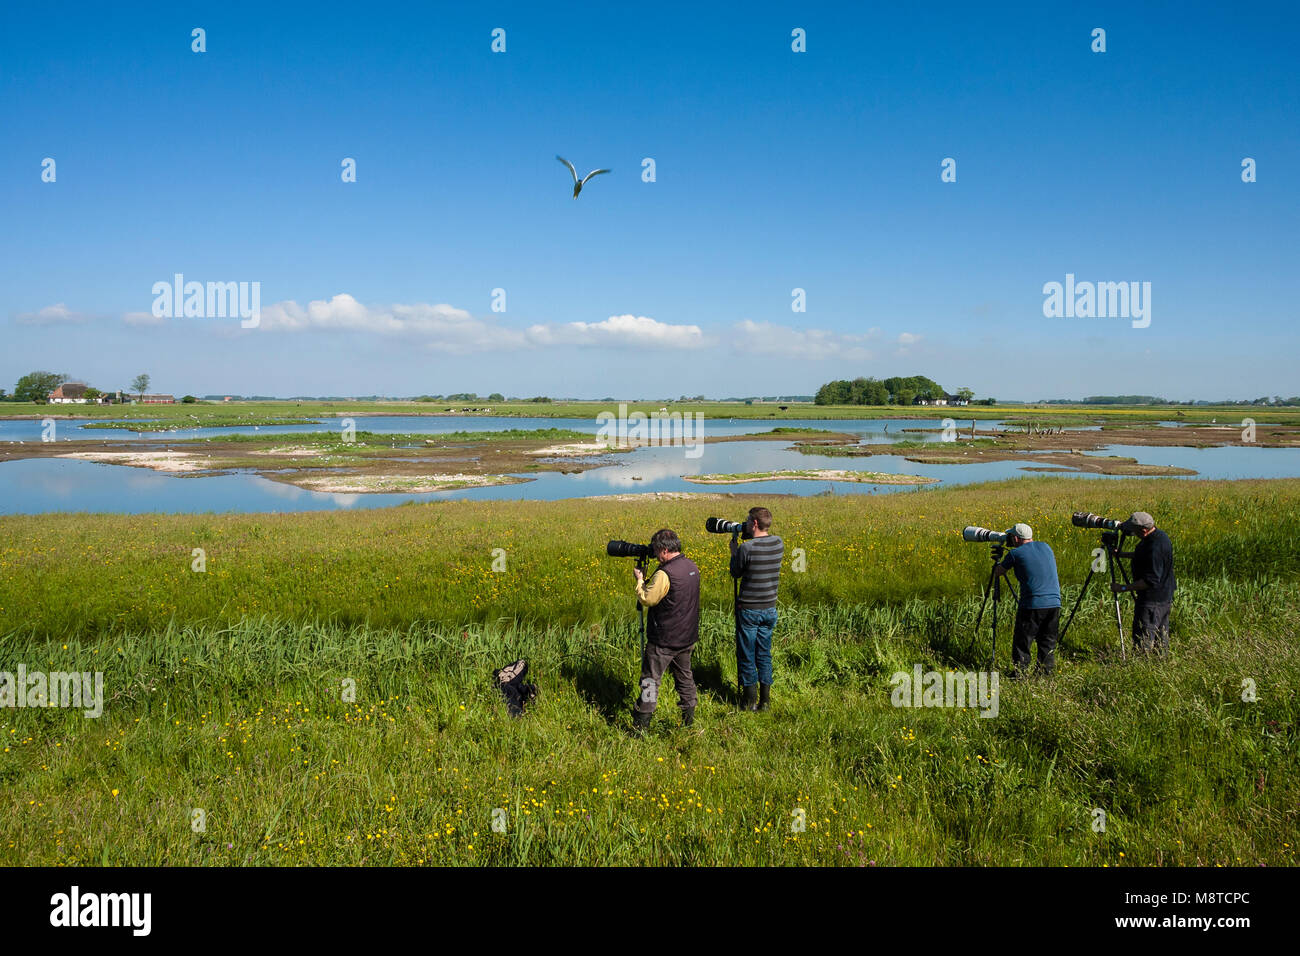 Dans Vogelfotografen actie bij waterplas rencontré vogels ; photographes d'oiseaux en action au lac avec des oiseaux Banque D'Images